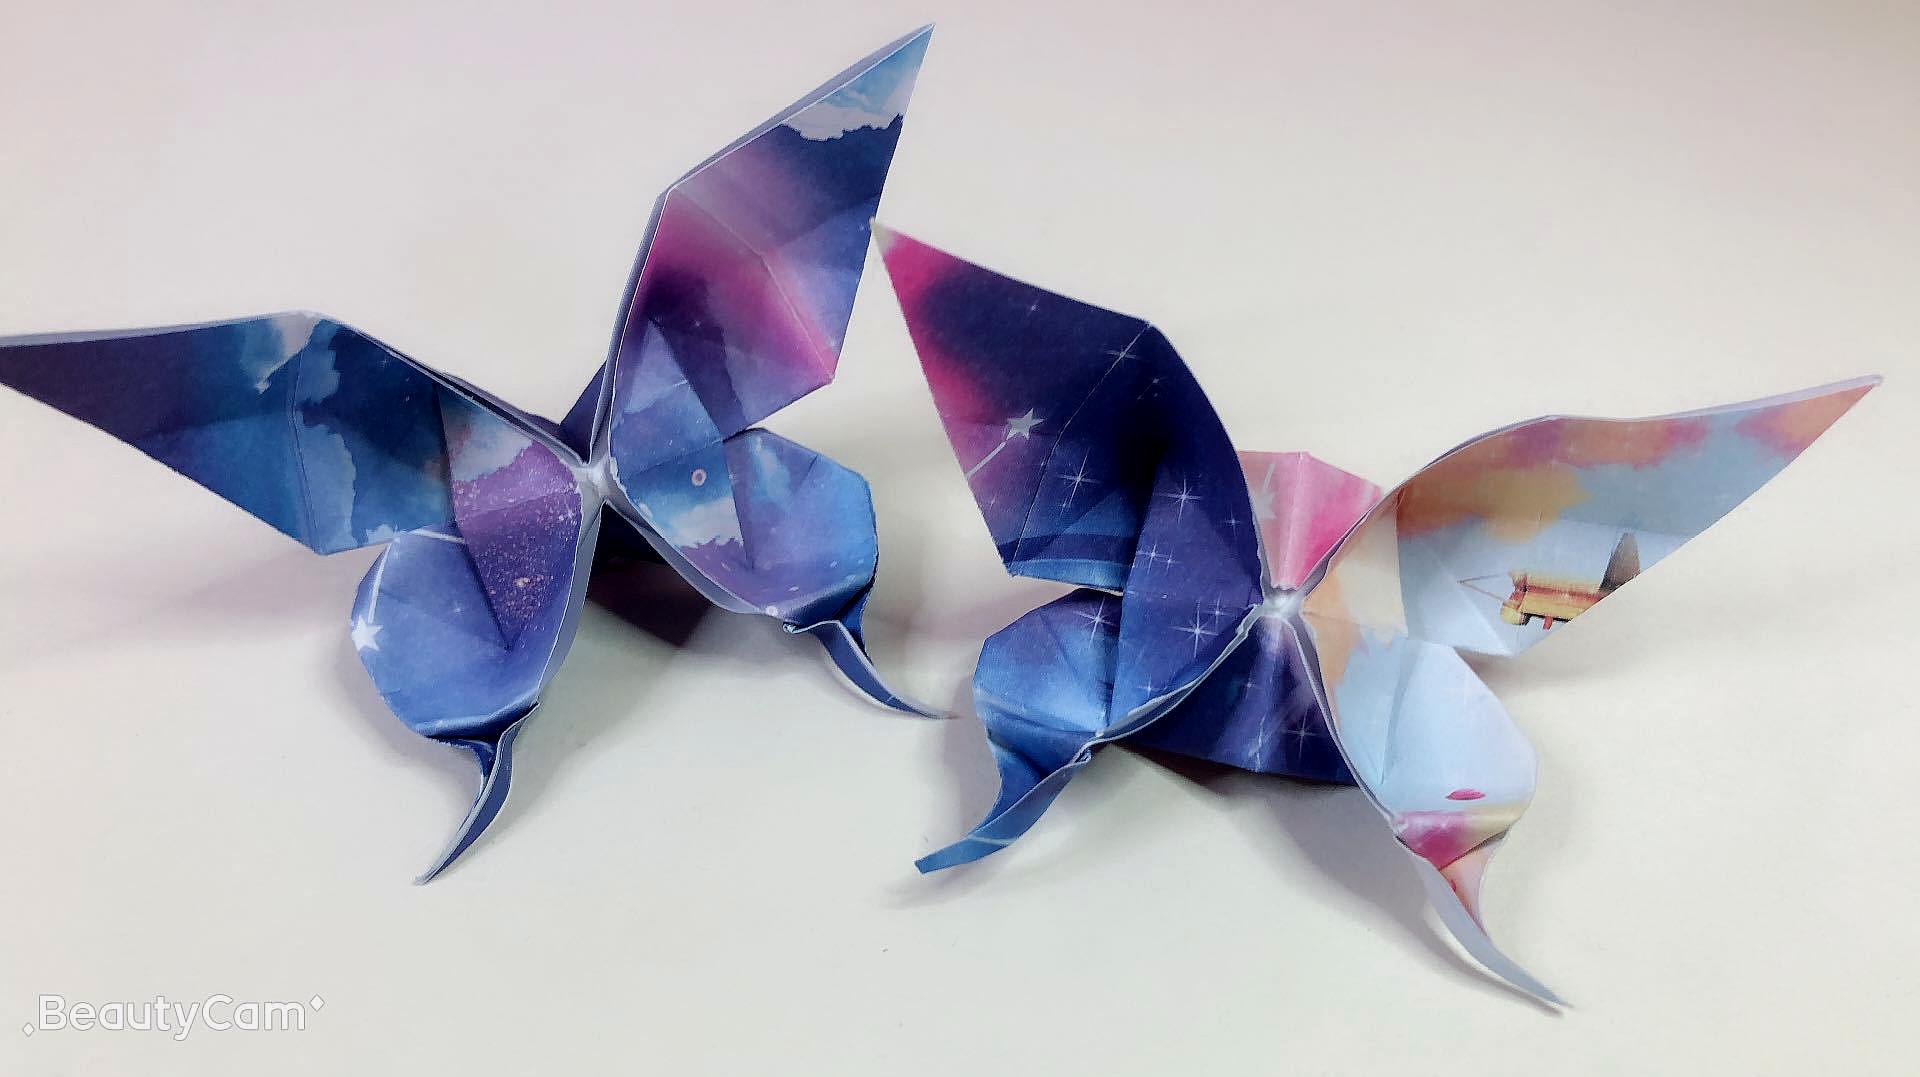 折纸手工教程，动物折纸暴龙第五版恐龙的折纸方法图解教程 - 有点网 - 好手艺